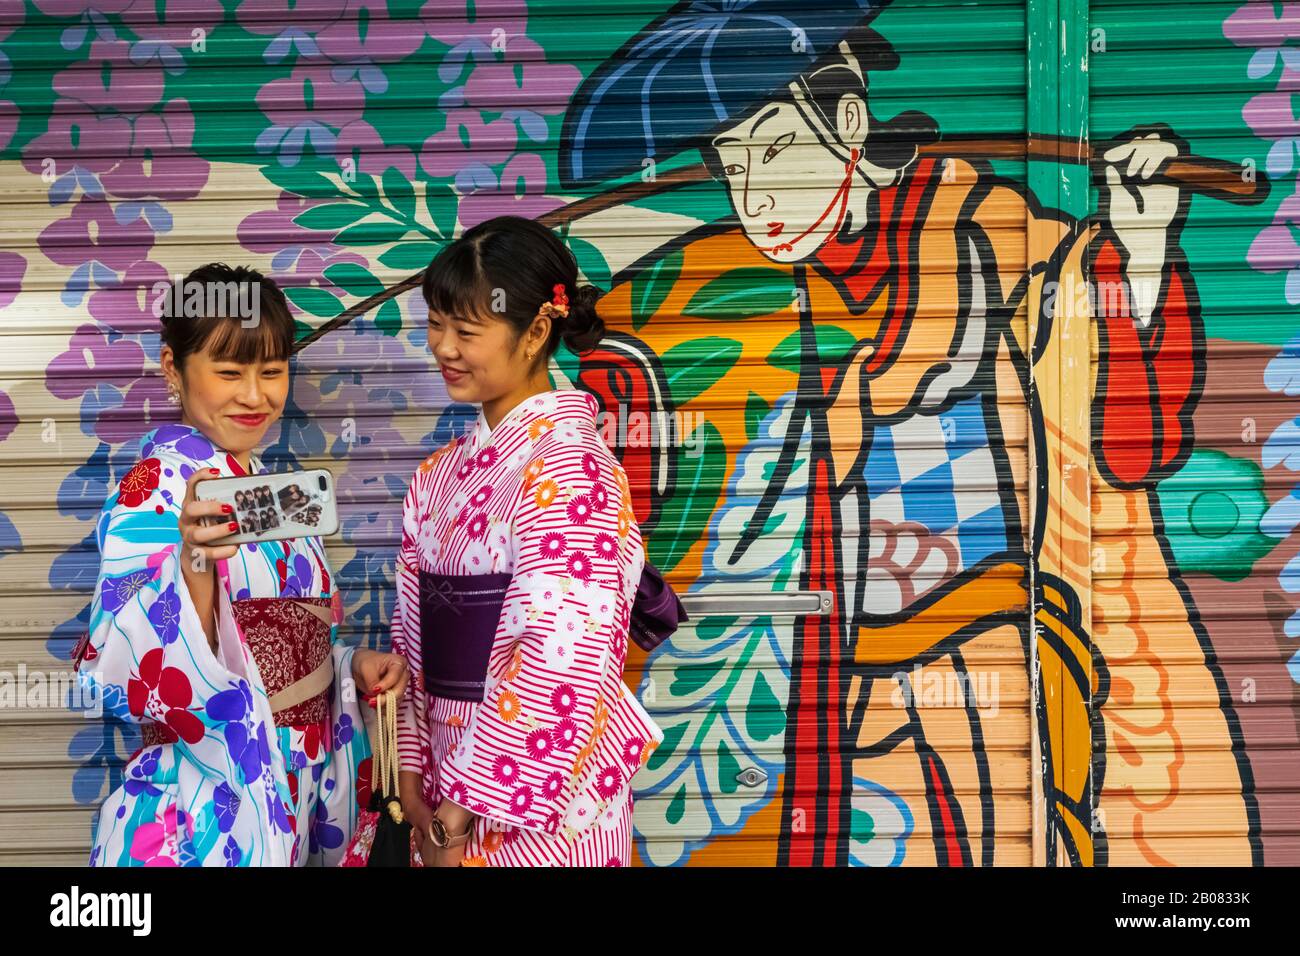 Japon, Honshu, Tokyo, Asakusa, Deux Femmes À Kimono Prenant Selfie Photos Devant La Couleur De La Photo De La Shutter Du Magasin Banque D'Images